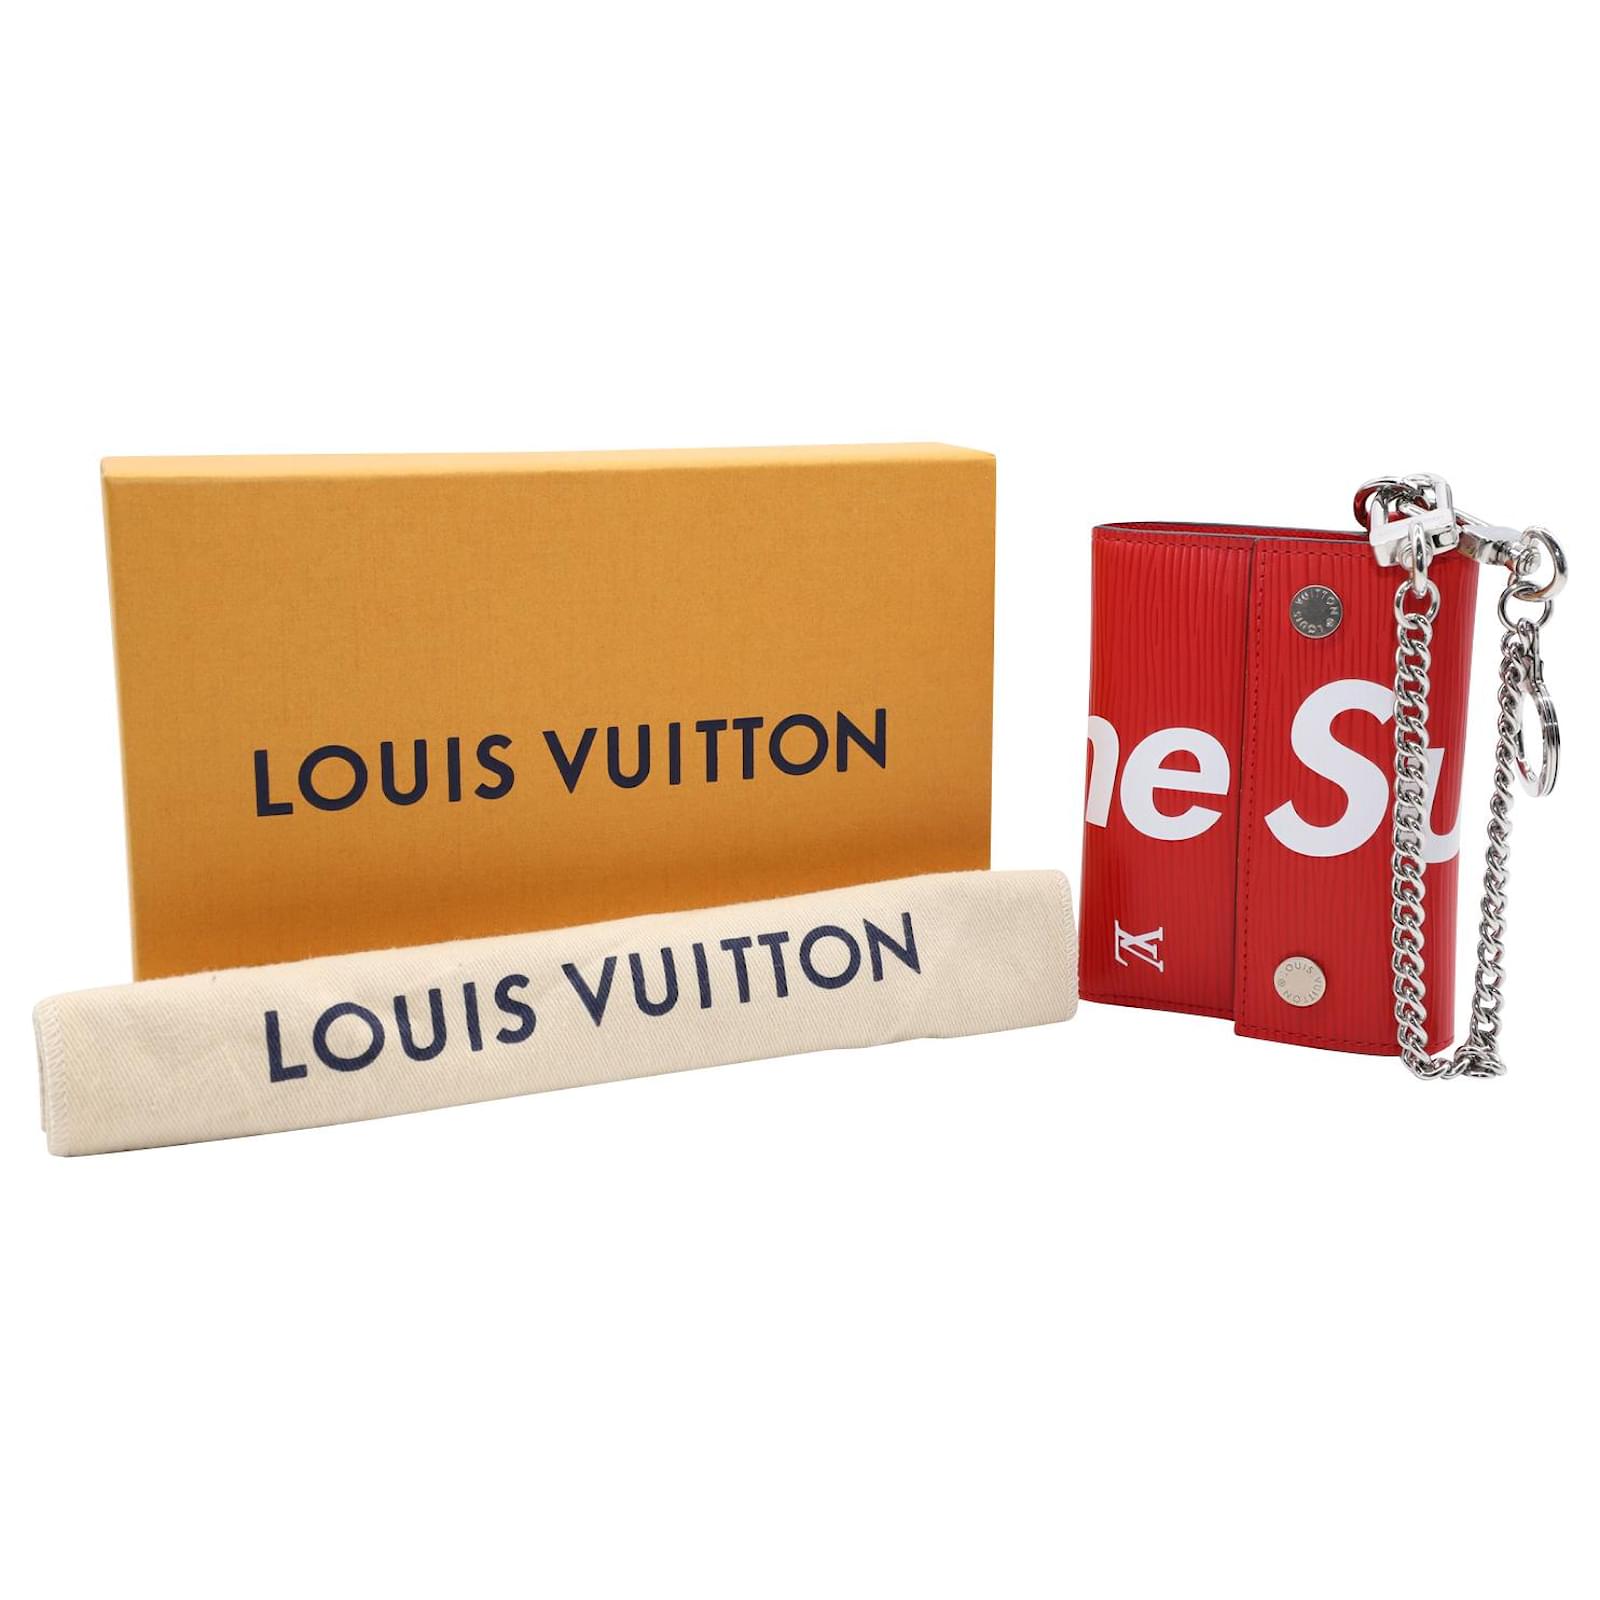 Louis Vuitton X Supreme Cadena de Cuero Billetera Cuero Epi - Rojo - M67755  RARO